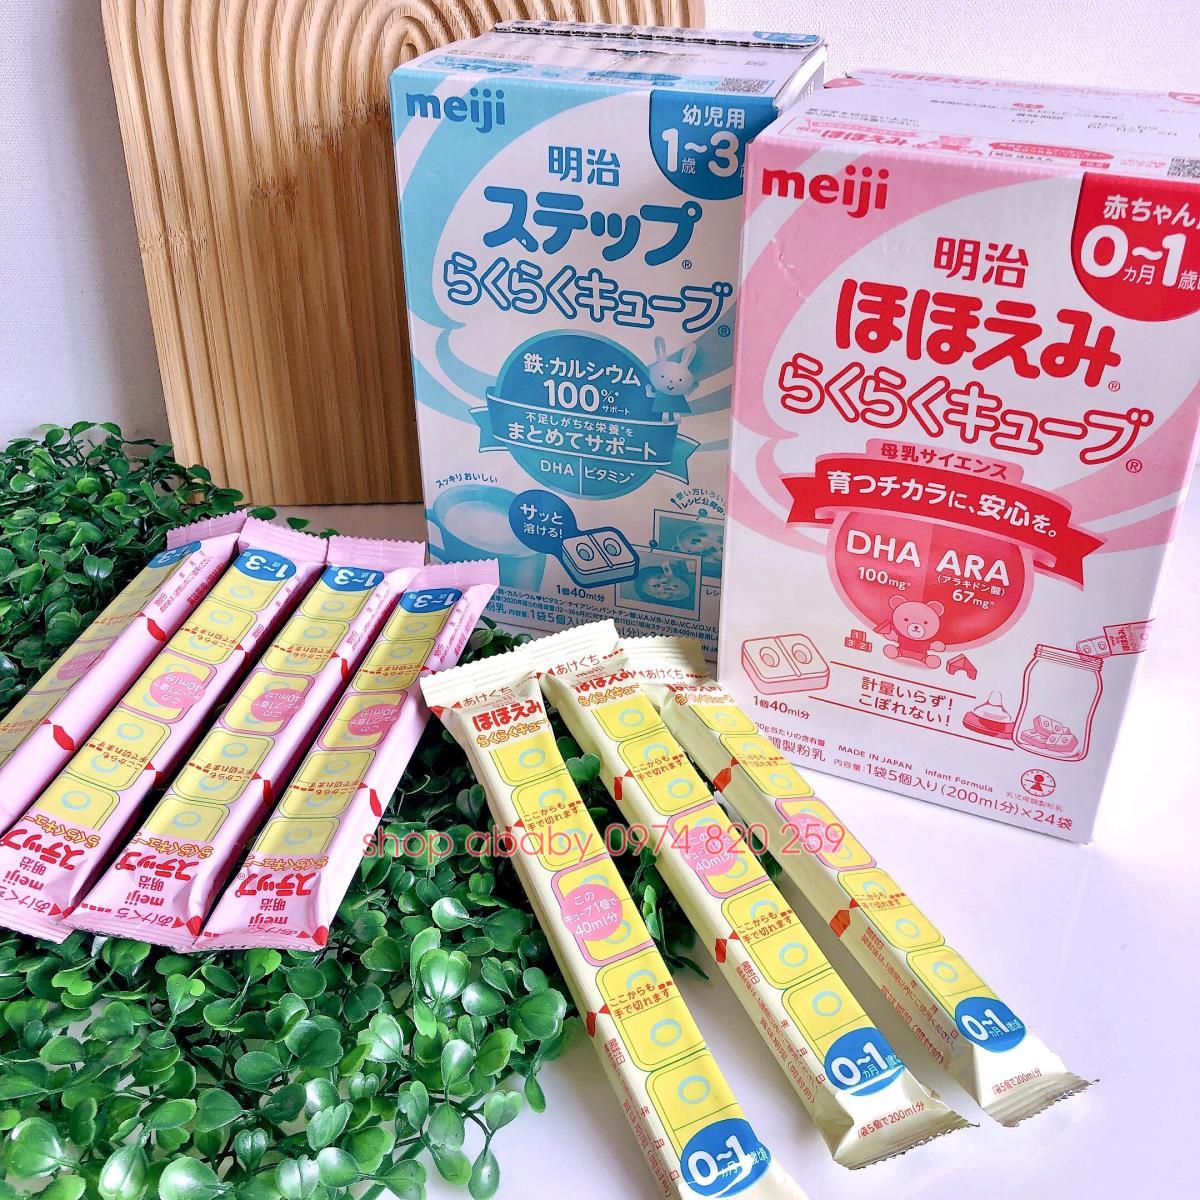 Sữa meiji thanh nội địa (bán lẻ) (hộp 24 thanh) 